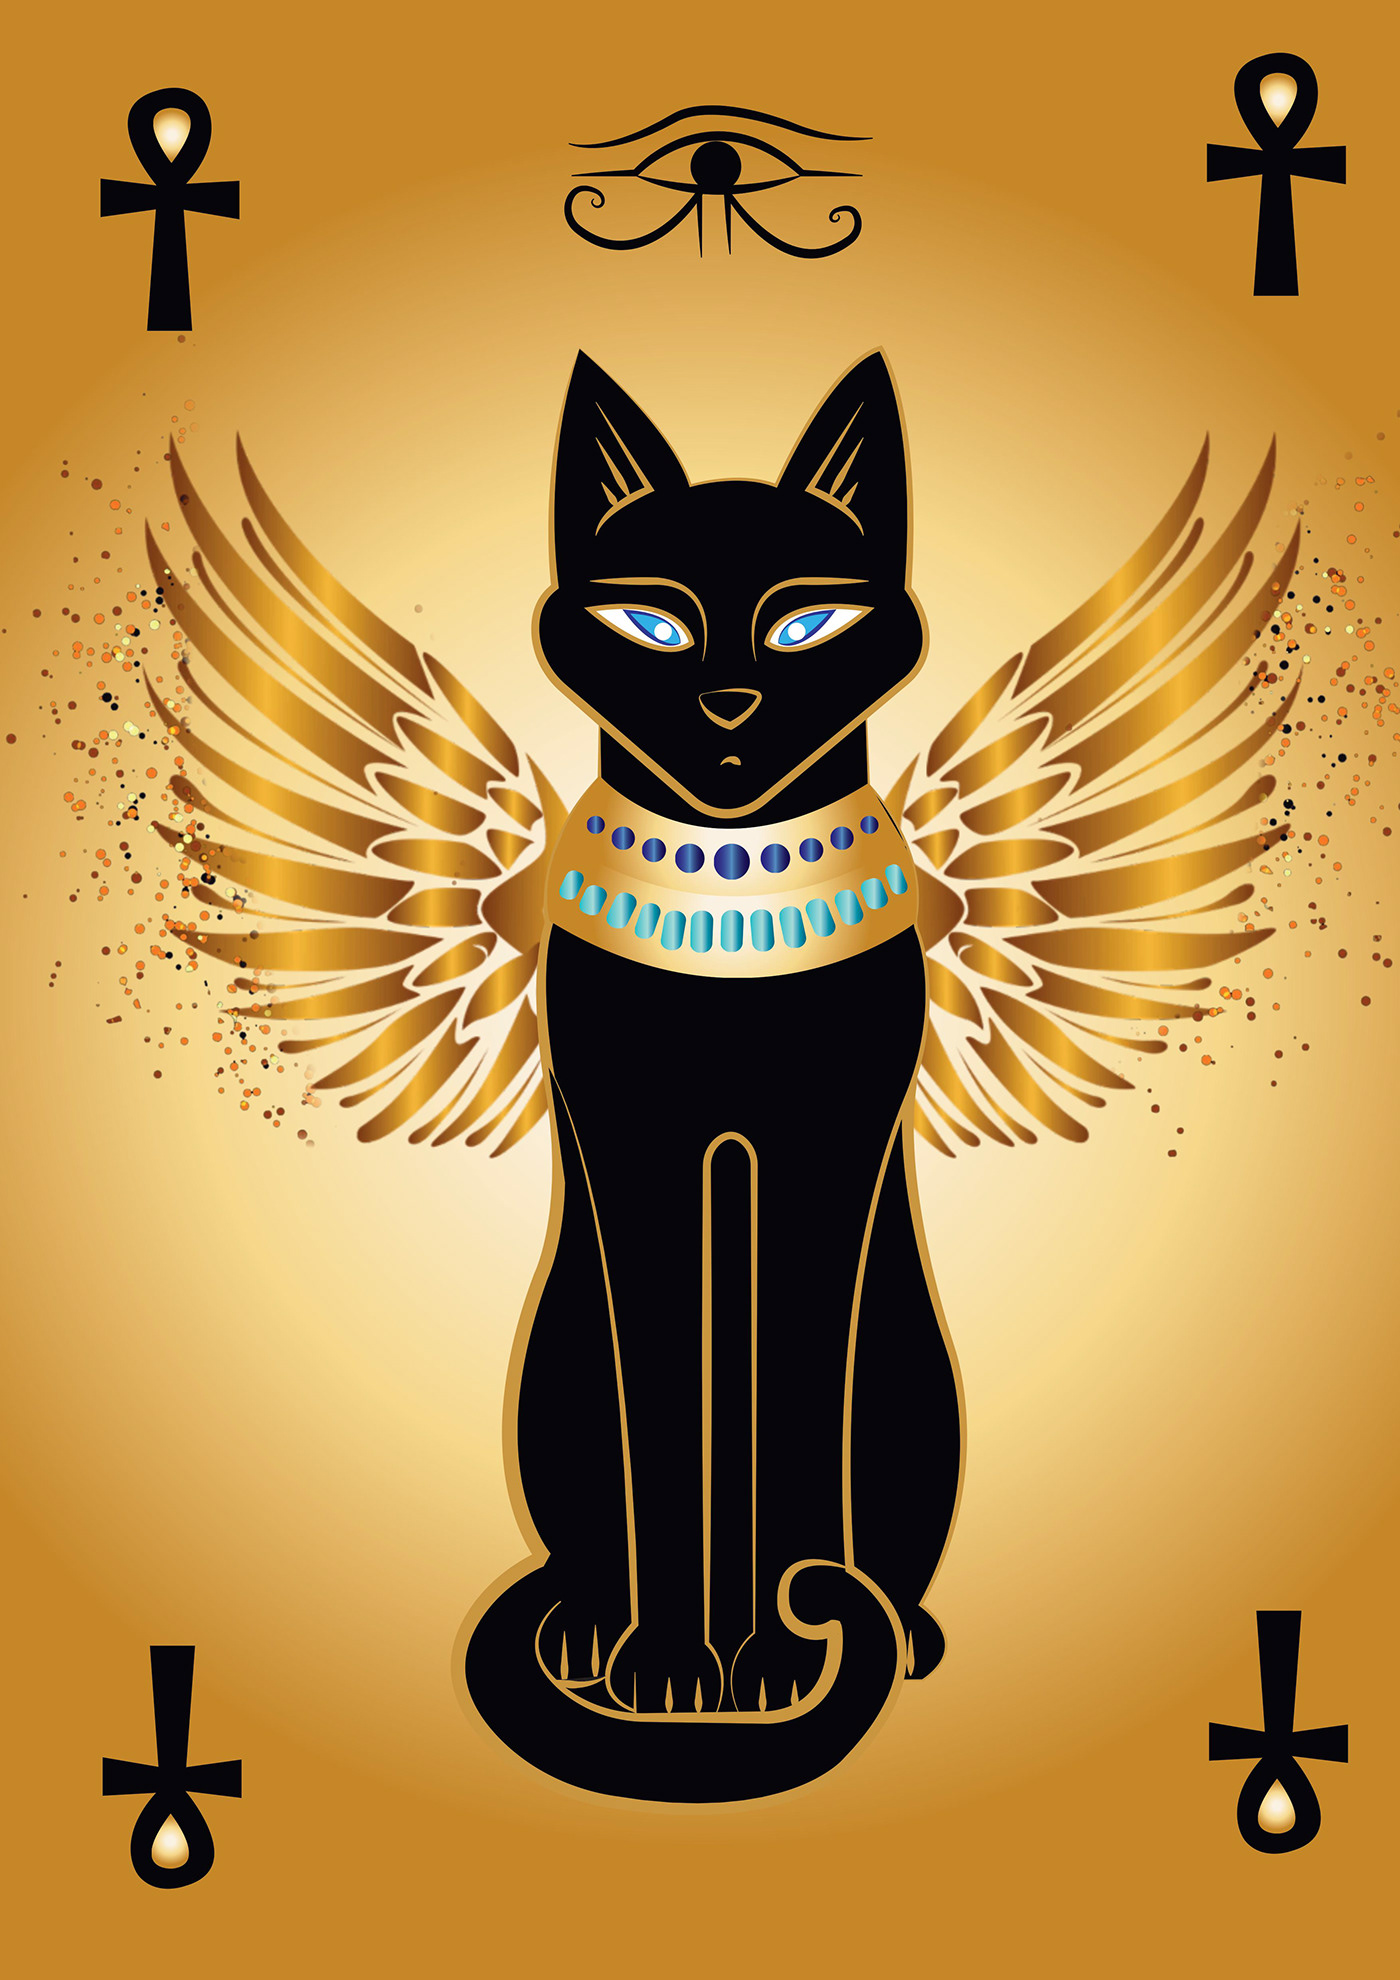 Ancient ancient egypt ancient egyptian ancient egyptians  Digital Art  Digital Artwork Egyptian cat  pharoah pharonic pharos